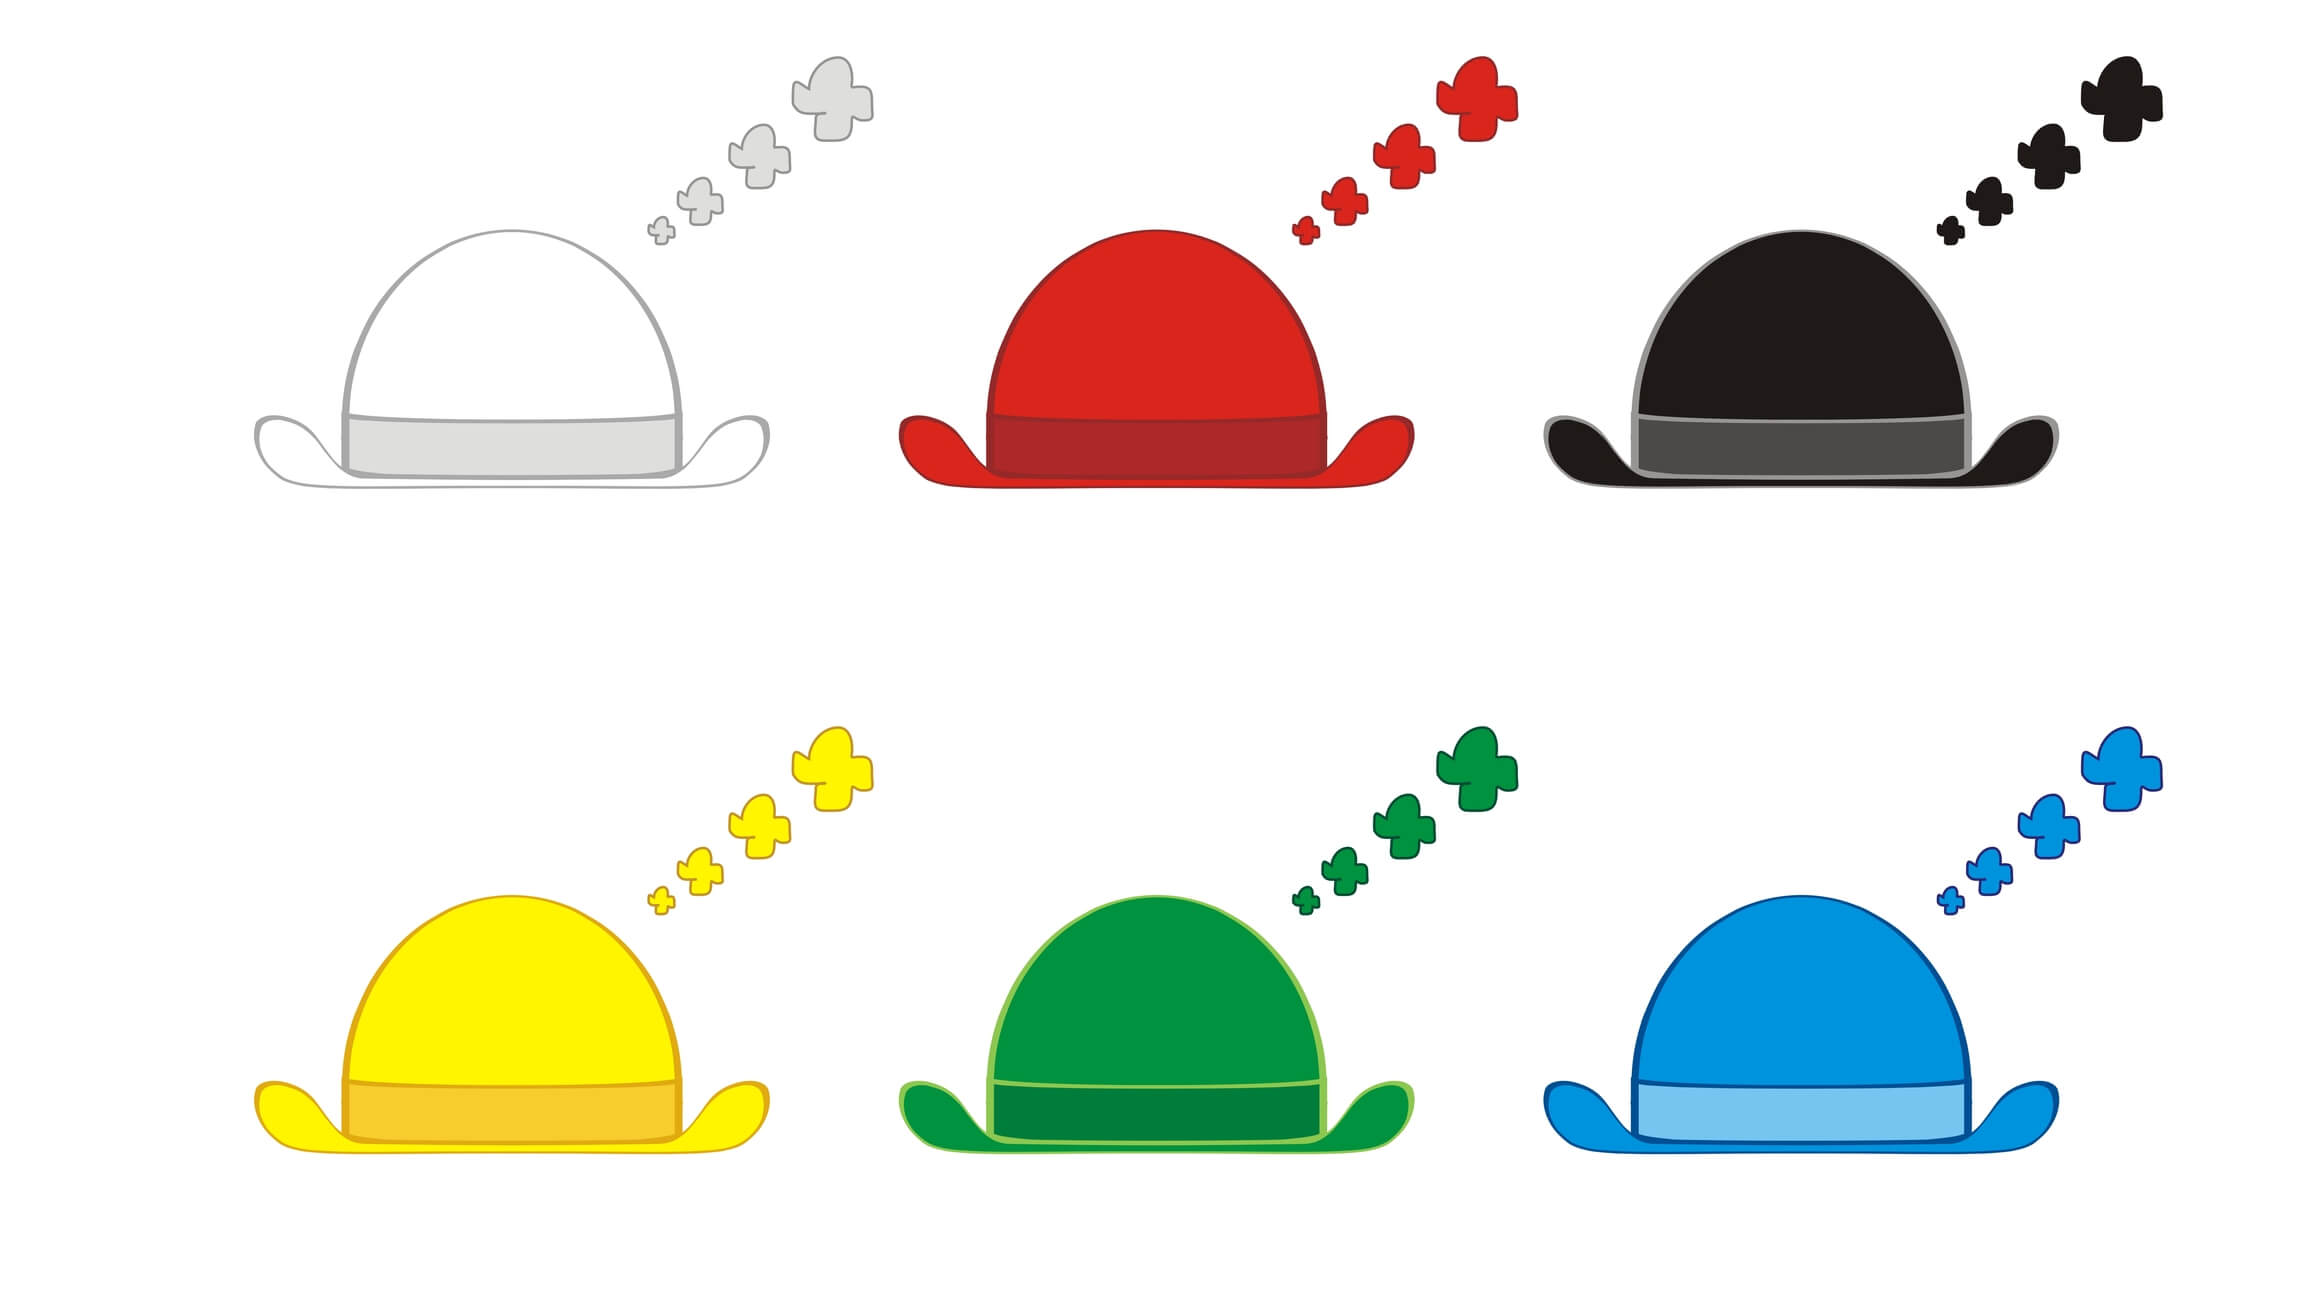 20 Best Six Thinking Hats Images Six Thinking Hats Thinking Skills Images